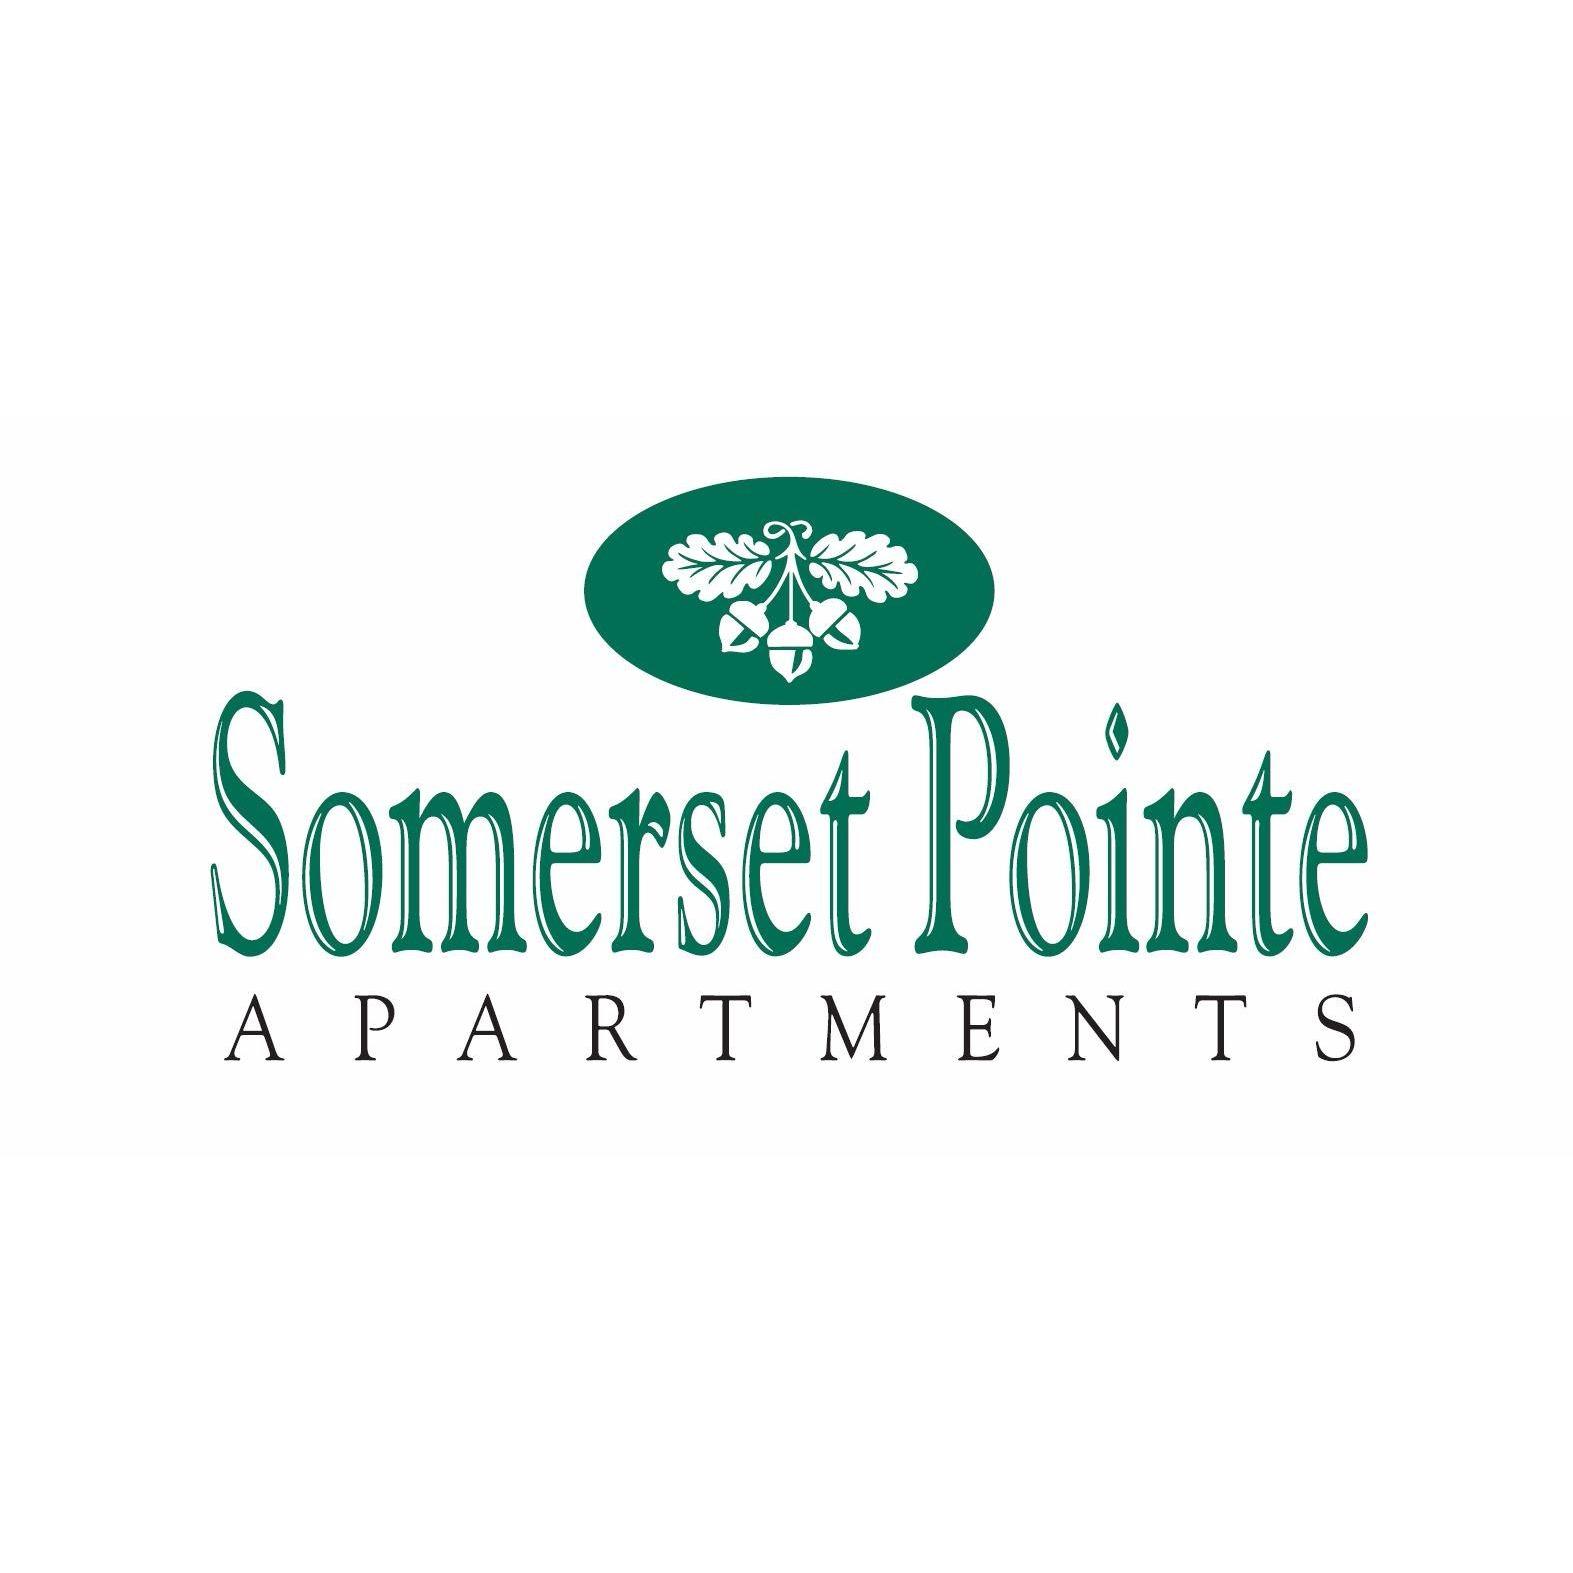 Somerset Pointe